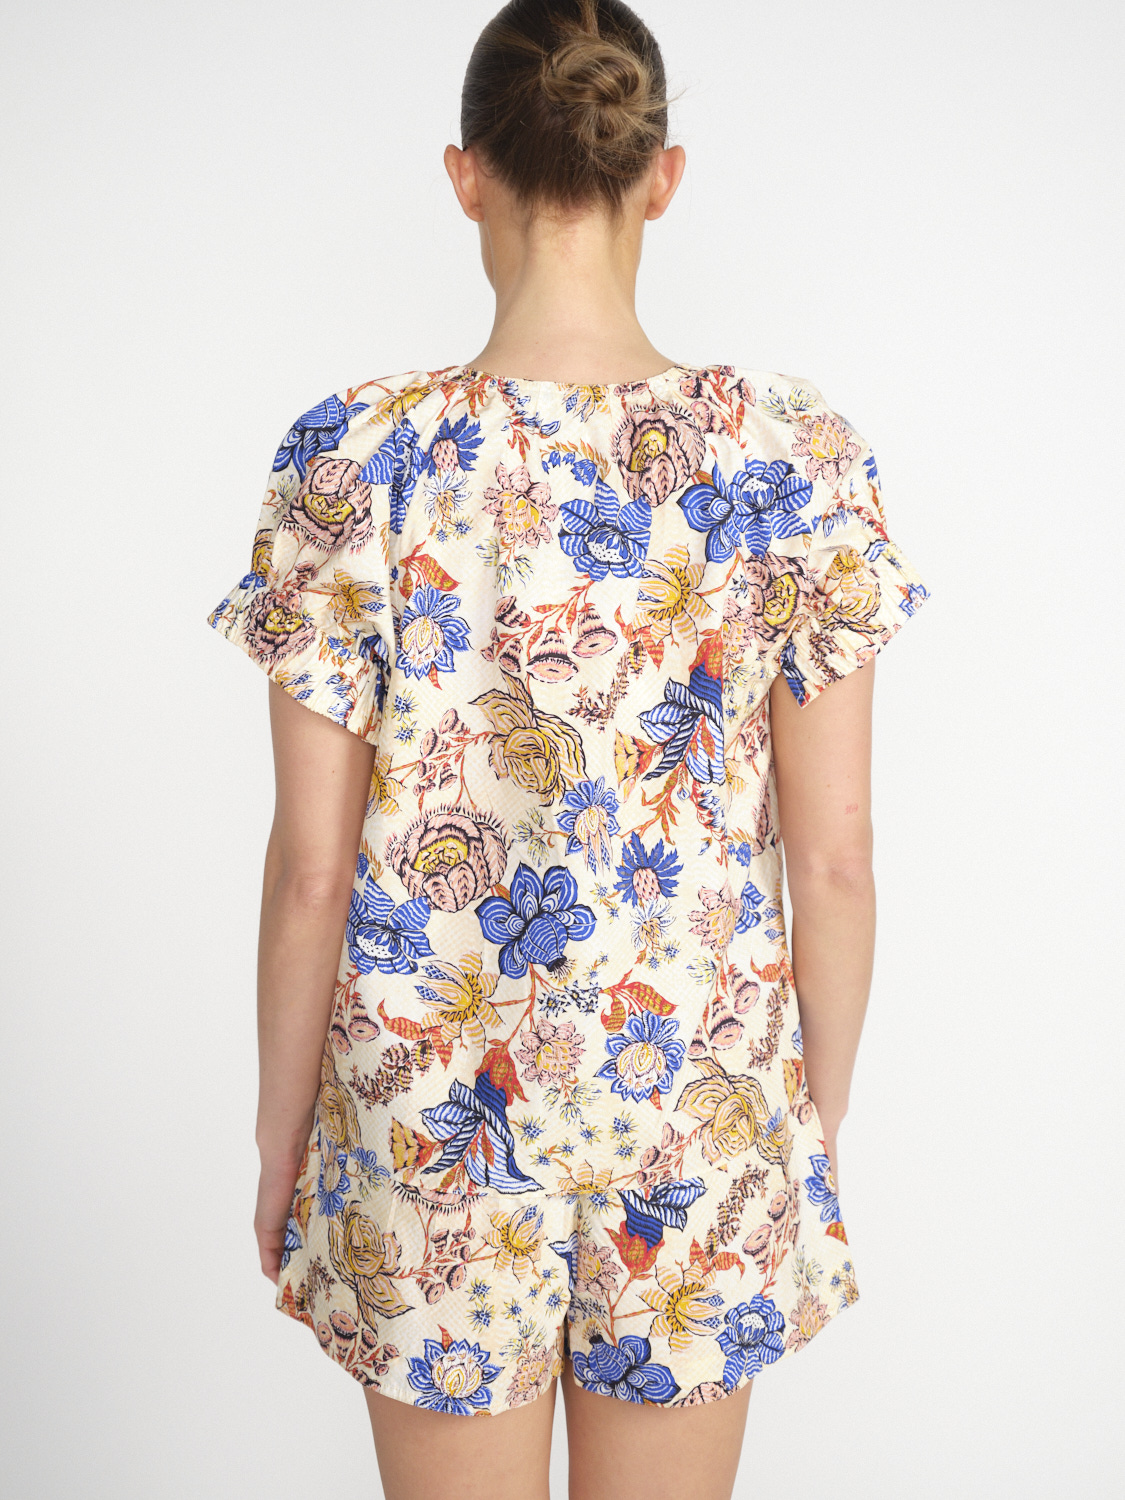 Ulla Johnson Naomi - Camicetta in cotone con disegno floreale   multicolore 36